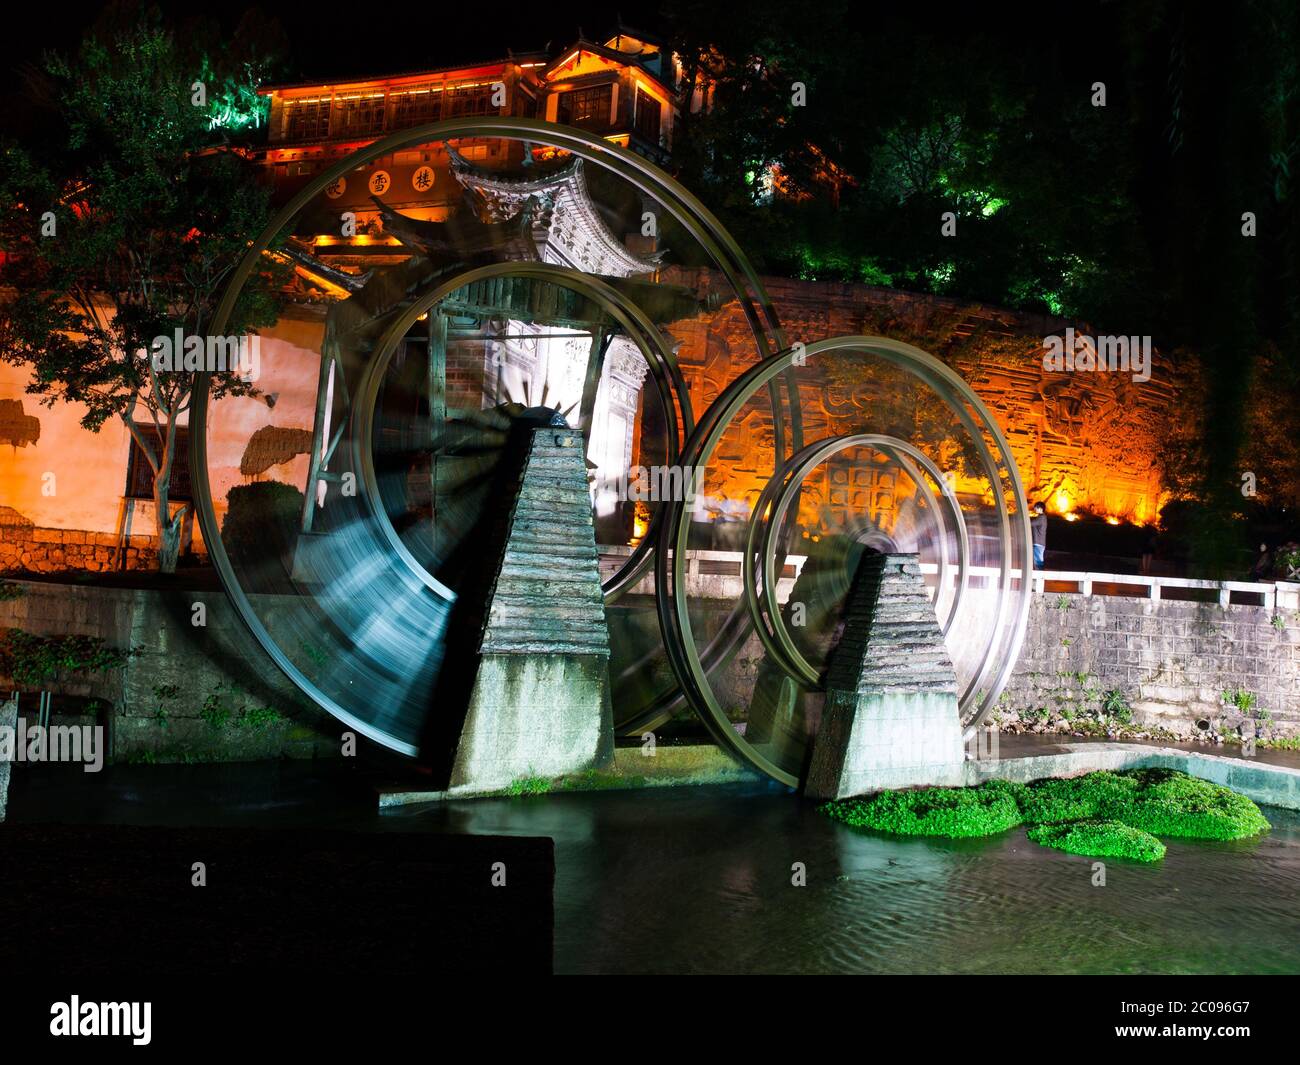 Roue d'époque de moulin à eau dans la vieille ville de Lijiang la nuit, Yunnan, Chine Banque D'Images